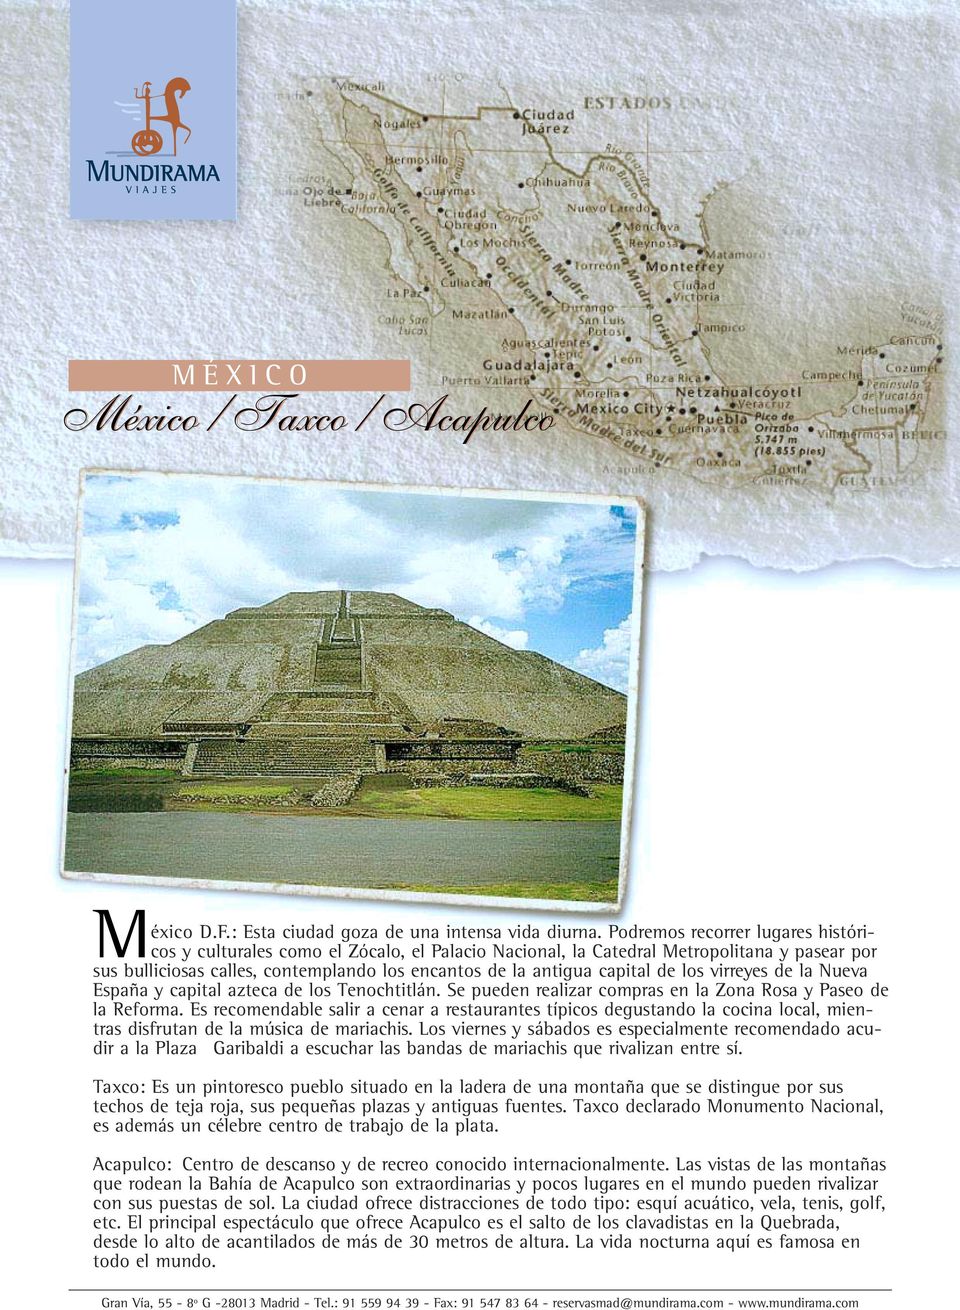 de los virreyes de la Nueva España y capital azteca de los Tenochtitlán. Se pueden realizar compras en la Zona Rosa y Paseo de la Reforma.